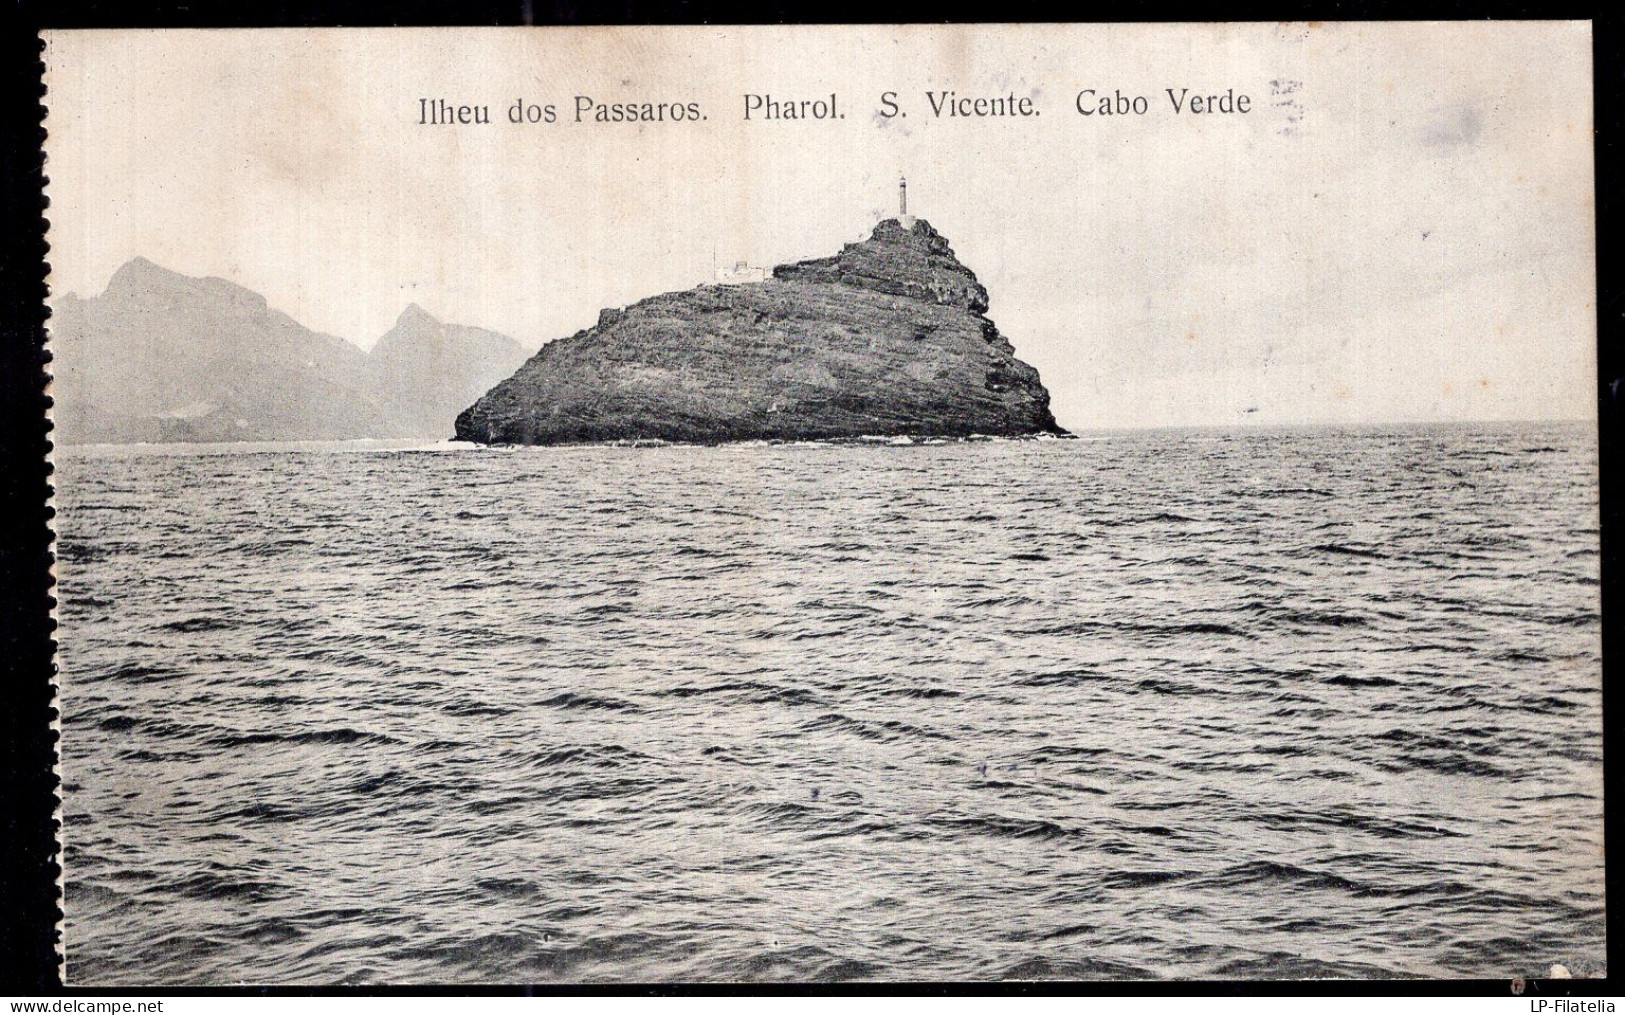 Cabo Verde - Circa 1920 - St. Vincent - Ilheu Dos Passaros - Pharol - Cape Verde